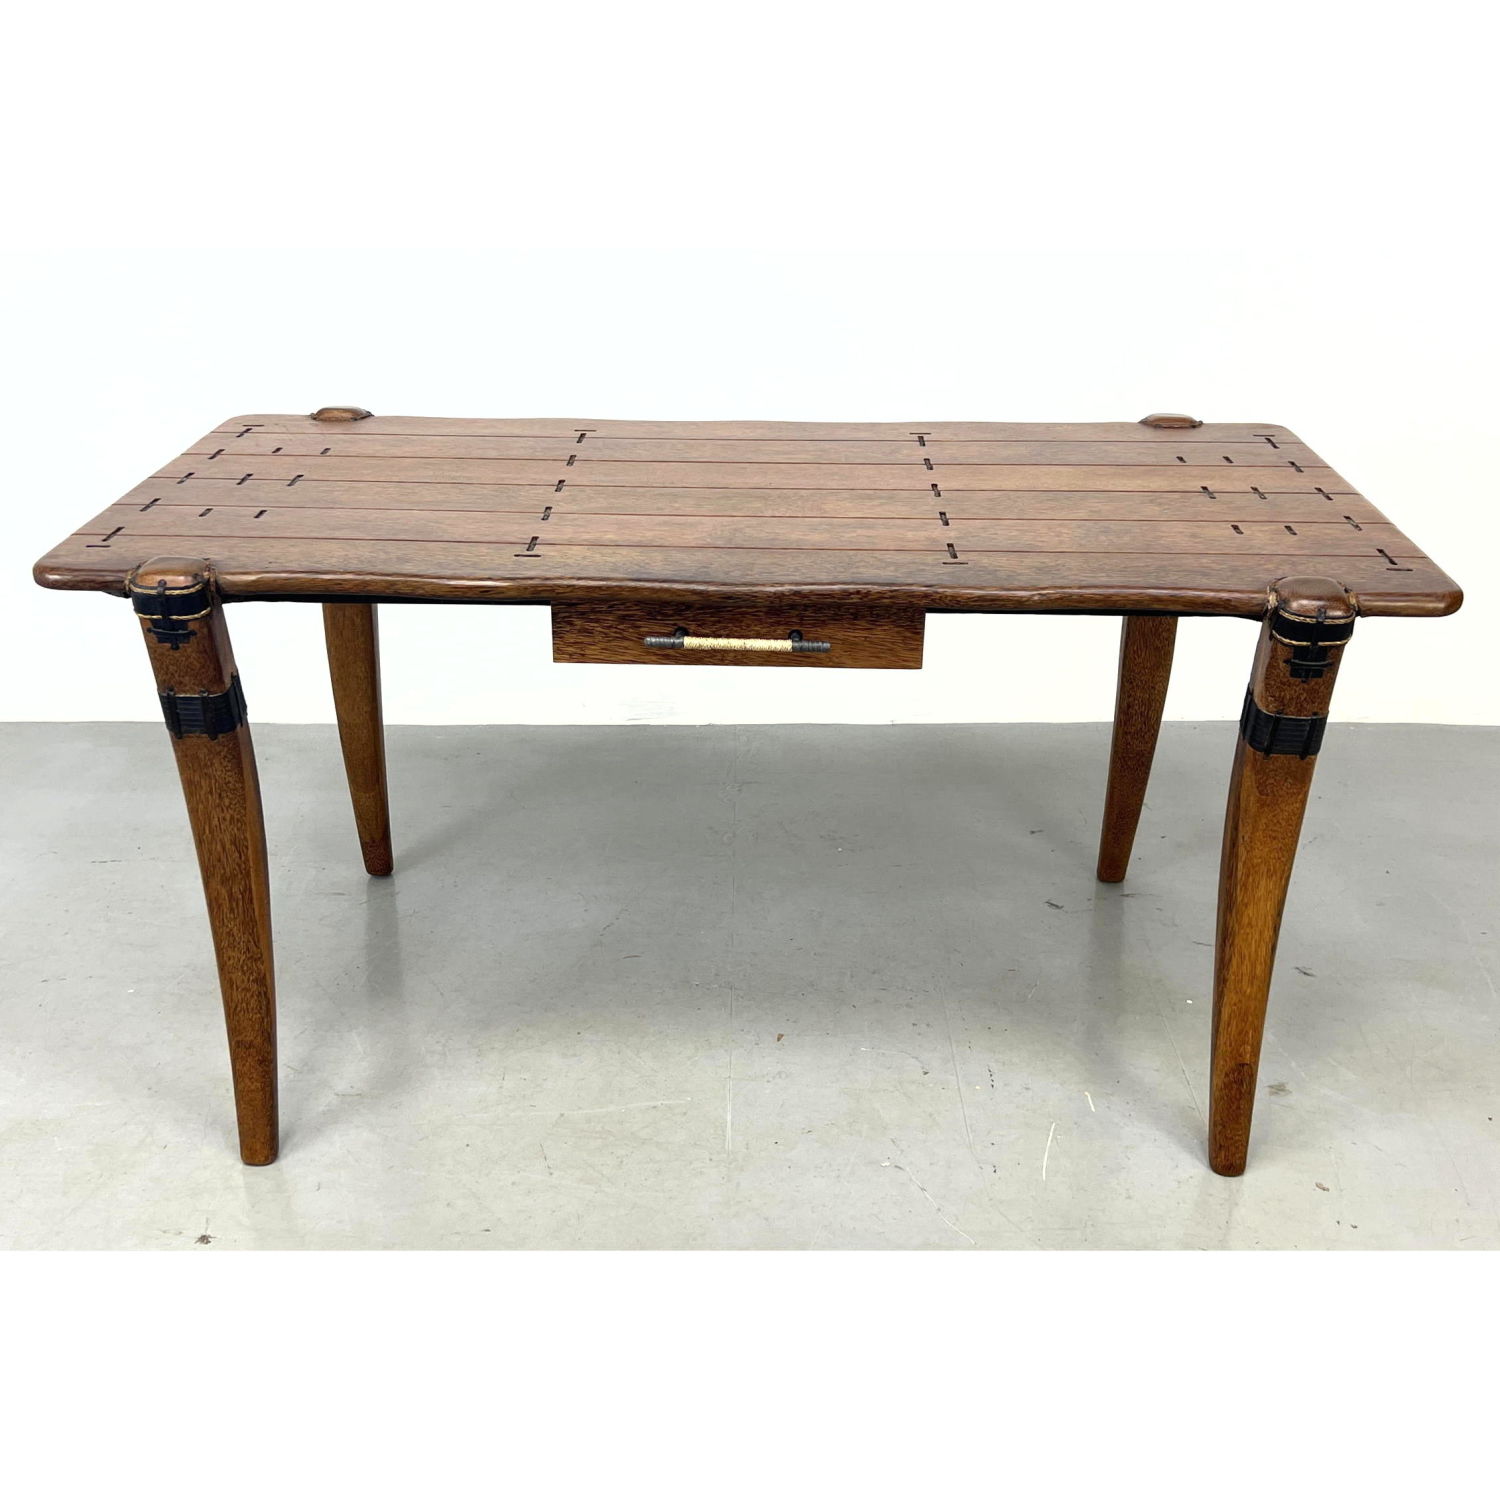 Pacific Green Mendi Desk Table 2b8f1c